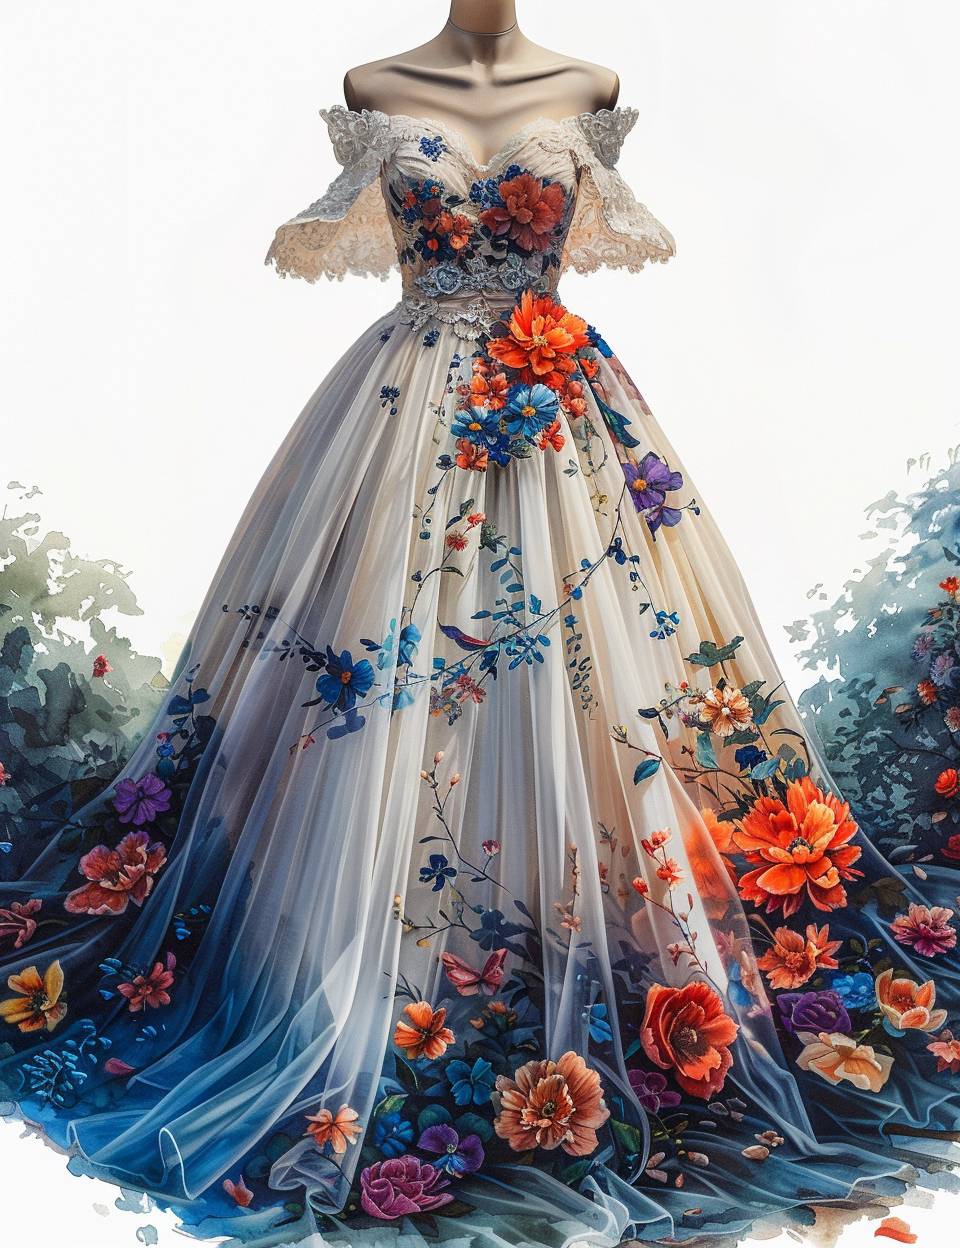 美しいビンテージ風の花柄ウェディングドレス、水彩、高いディテール、HDR、自己影、ユニーク、複雑なディテール、手描き